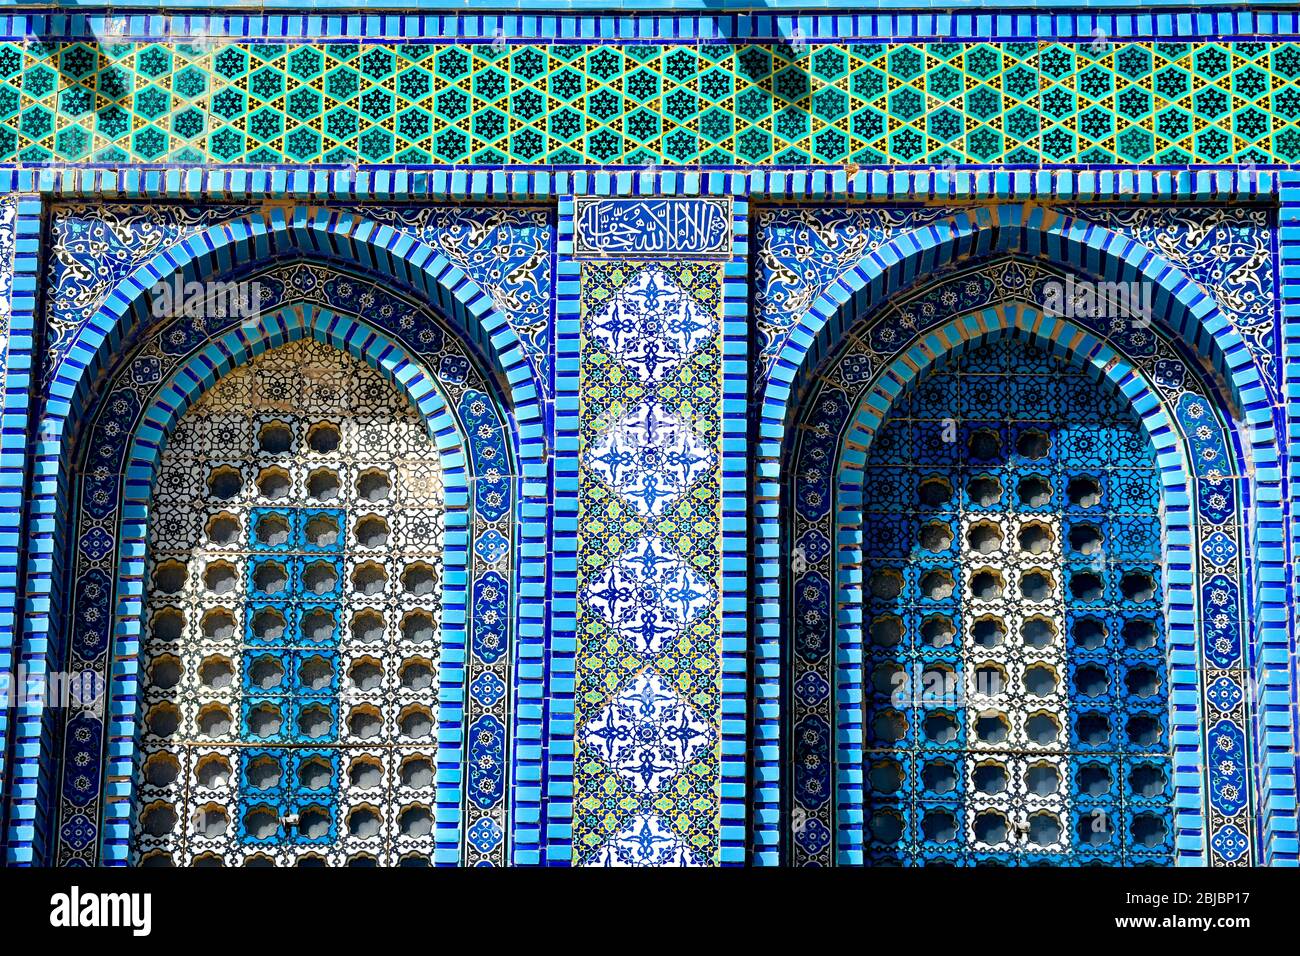 Détail de la mosaïque arabe avec carreaux de céramique émaillée de style byzantin dans le Dôme du Rocher, un sanctuaire islamique la vieille ville de Jérusalem, Israël. Banque D'Images